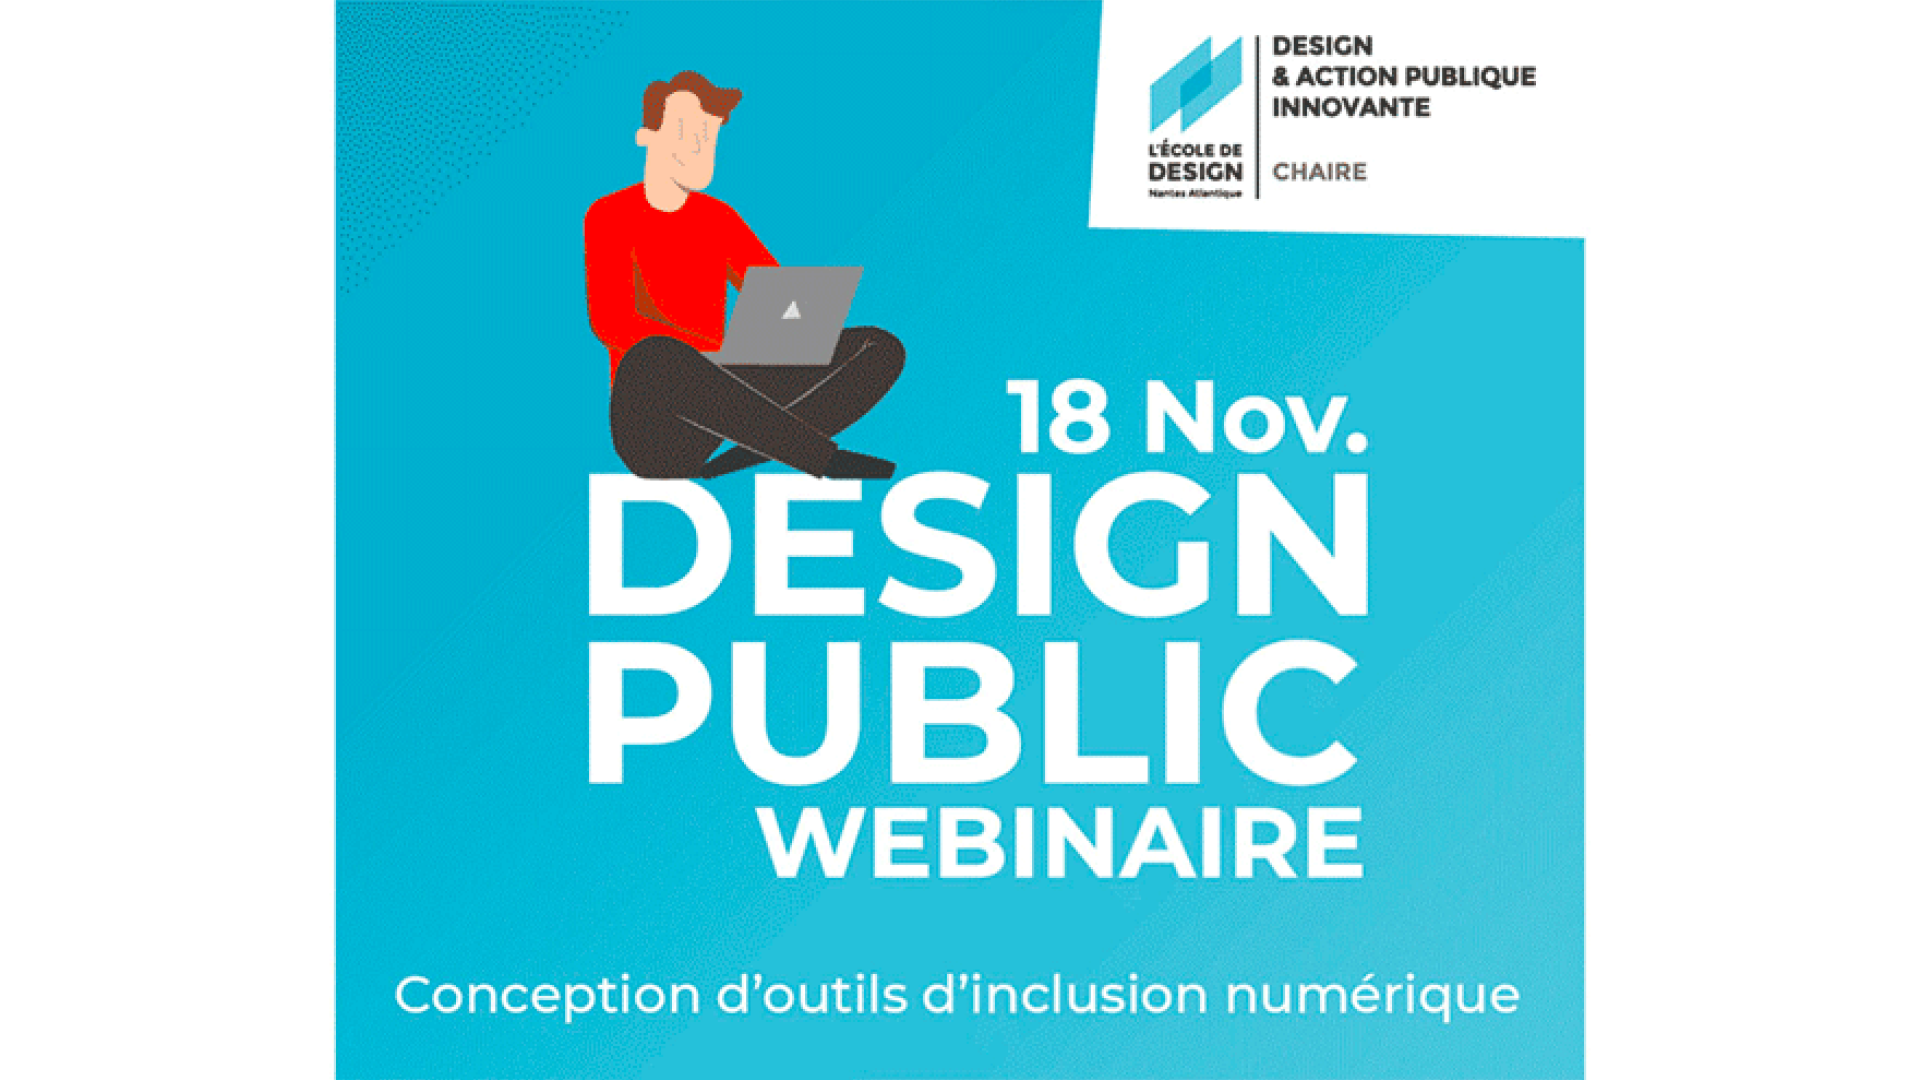 Webinaire 18 novembre Chaire Design & Action publique innovante